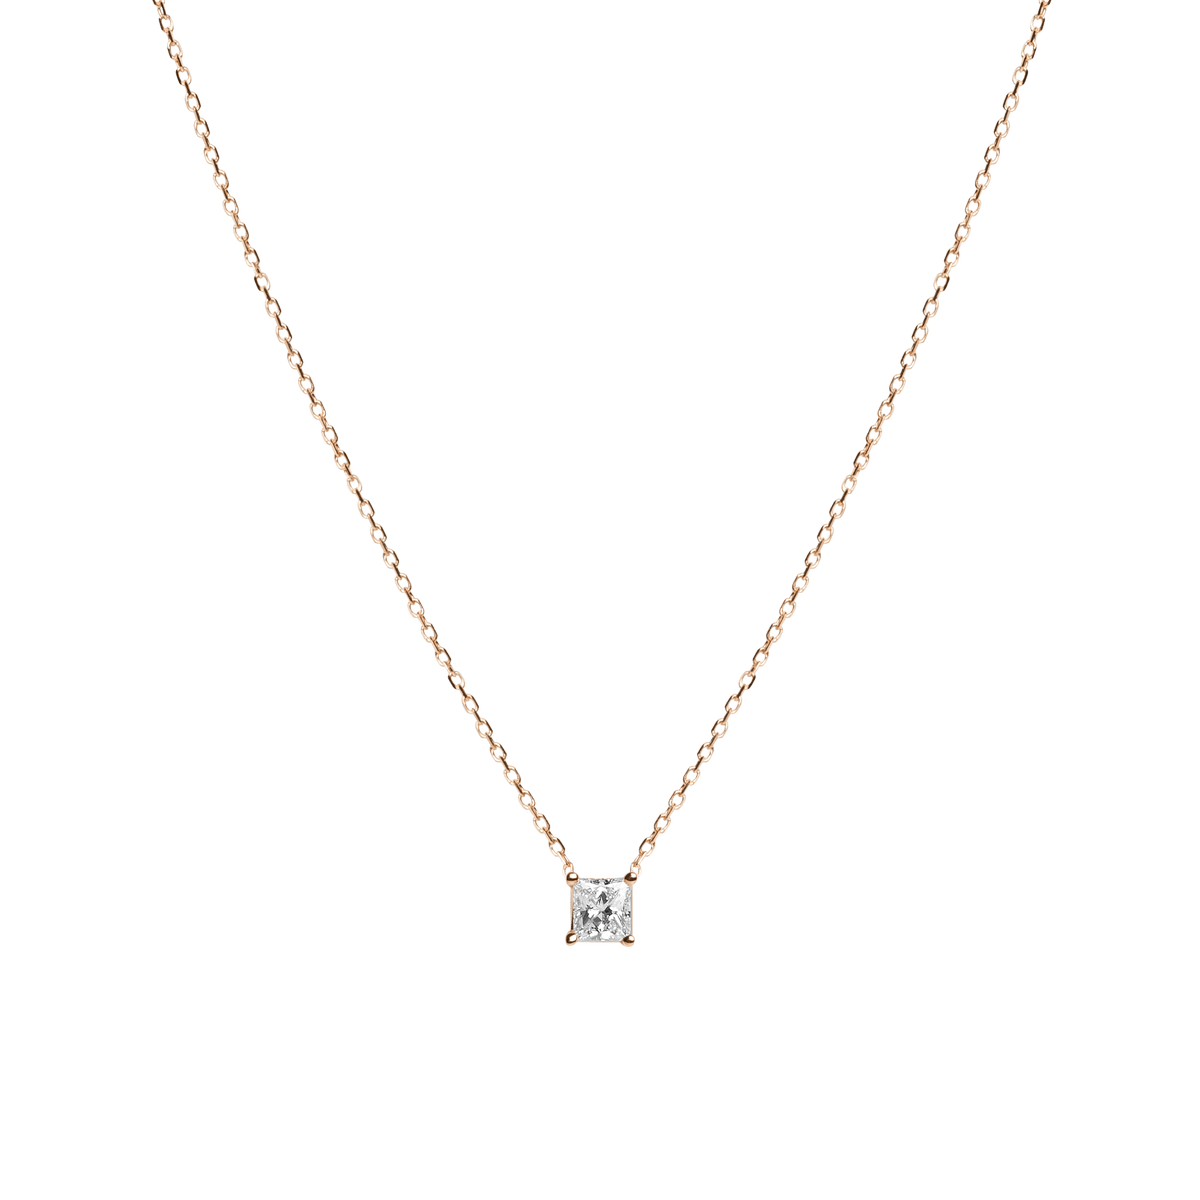 DB Classic round brilliant diamond pendant